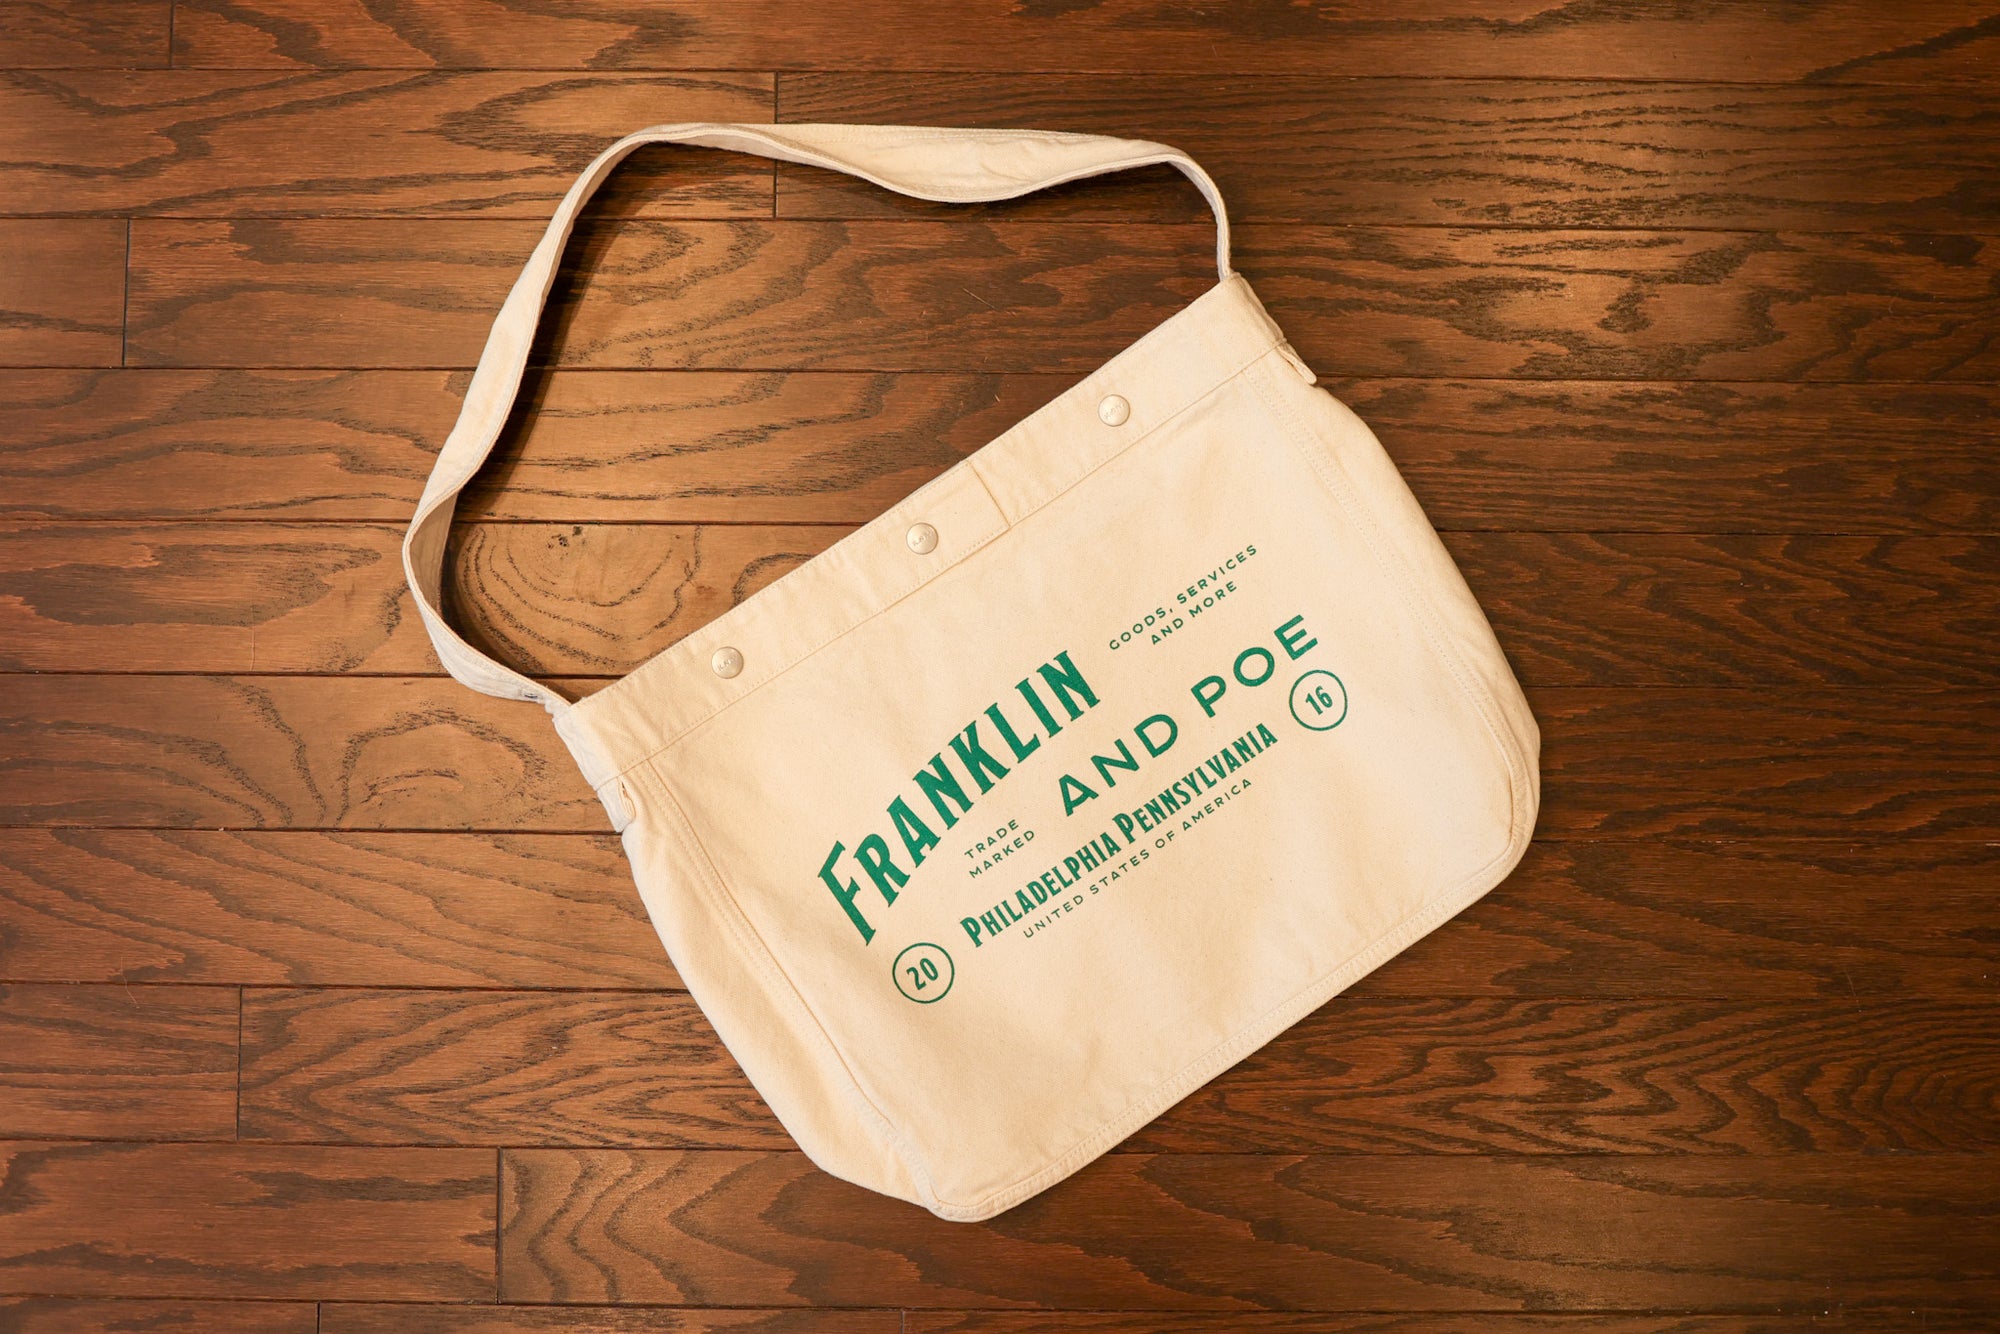 Franklin & Poe Mail Bag